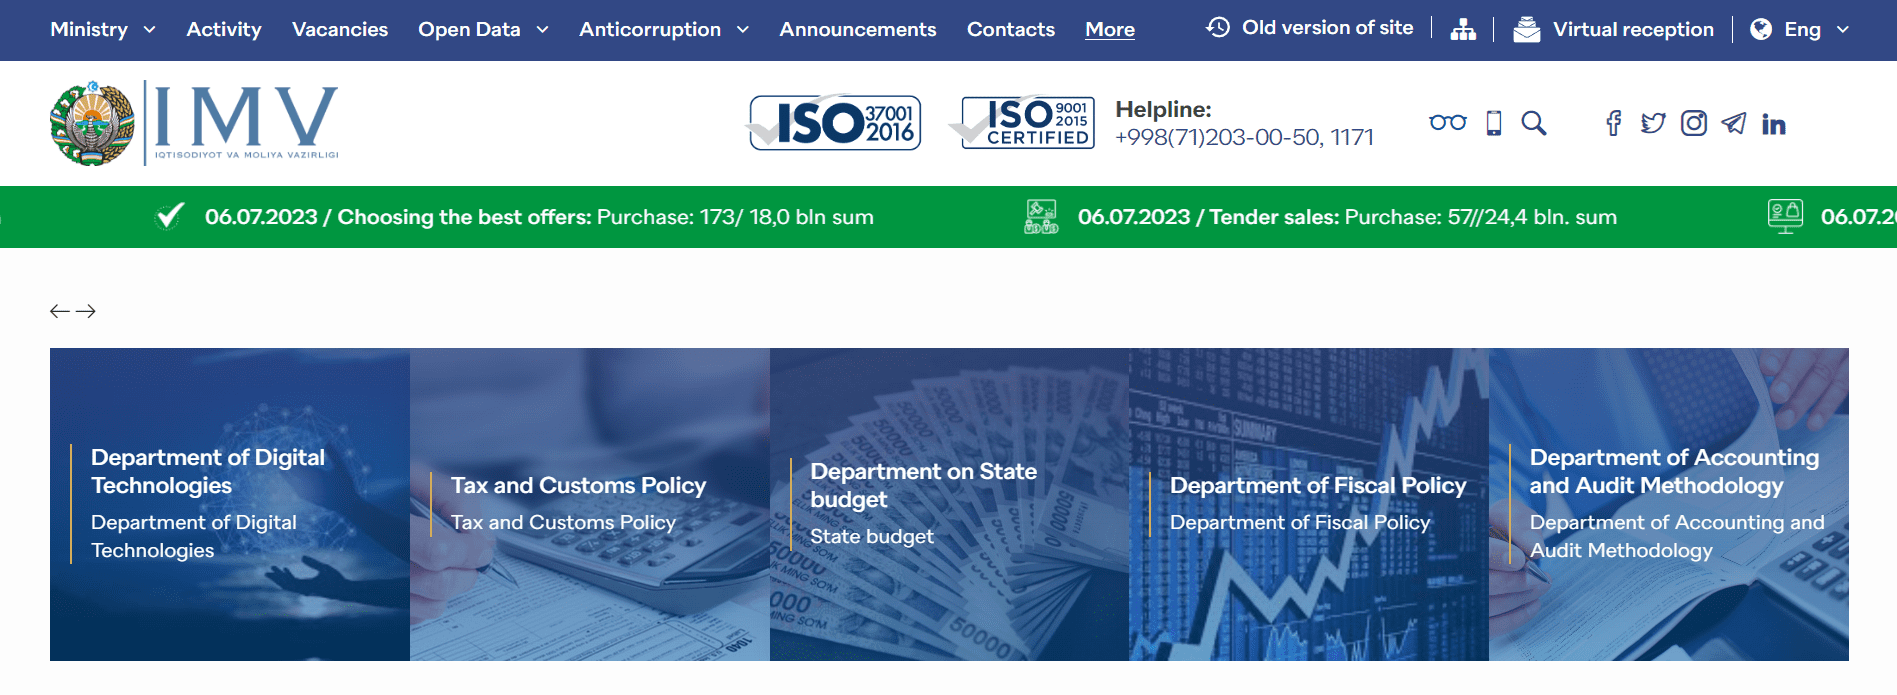 Министерство экономики и финансов Республики Узбекистан (imv.uz) - официальный сайт, виртуальная приемная